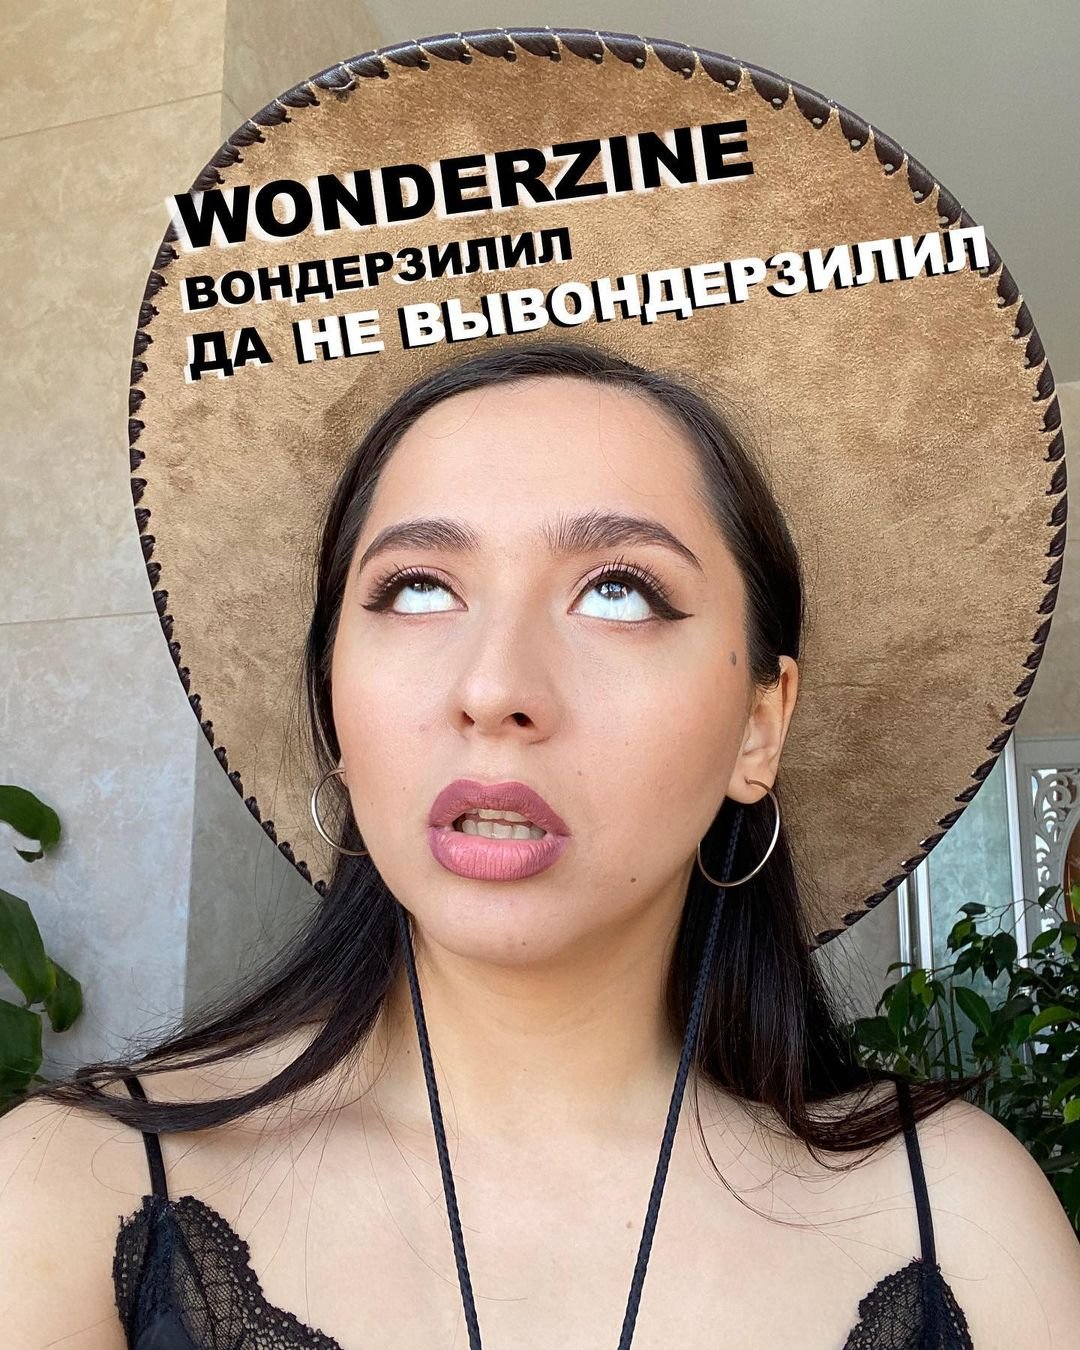 Певица Манижа подаёт в суд на издание "Wonderzine"